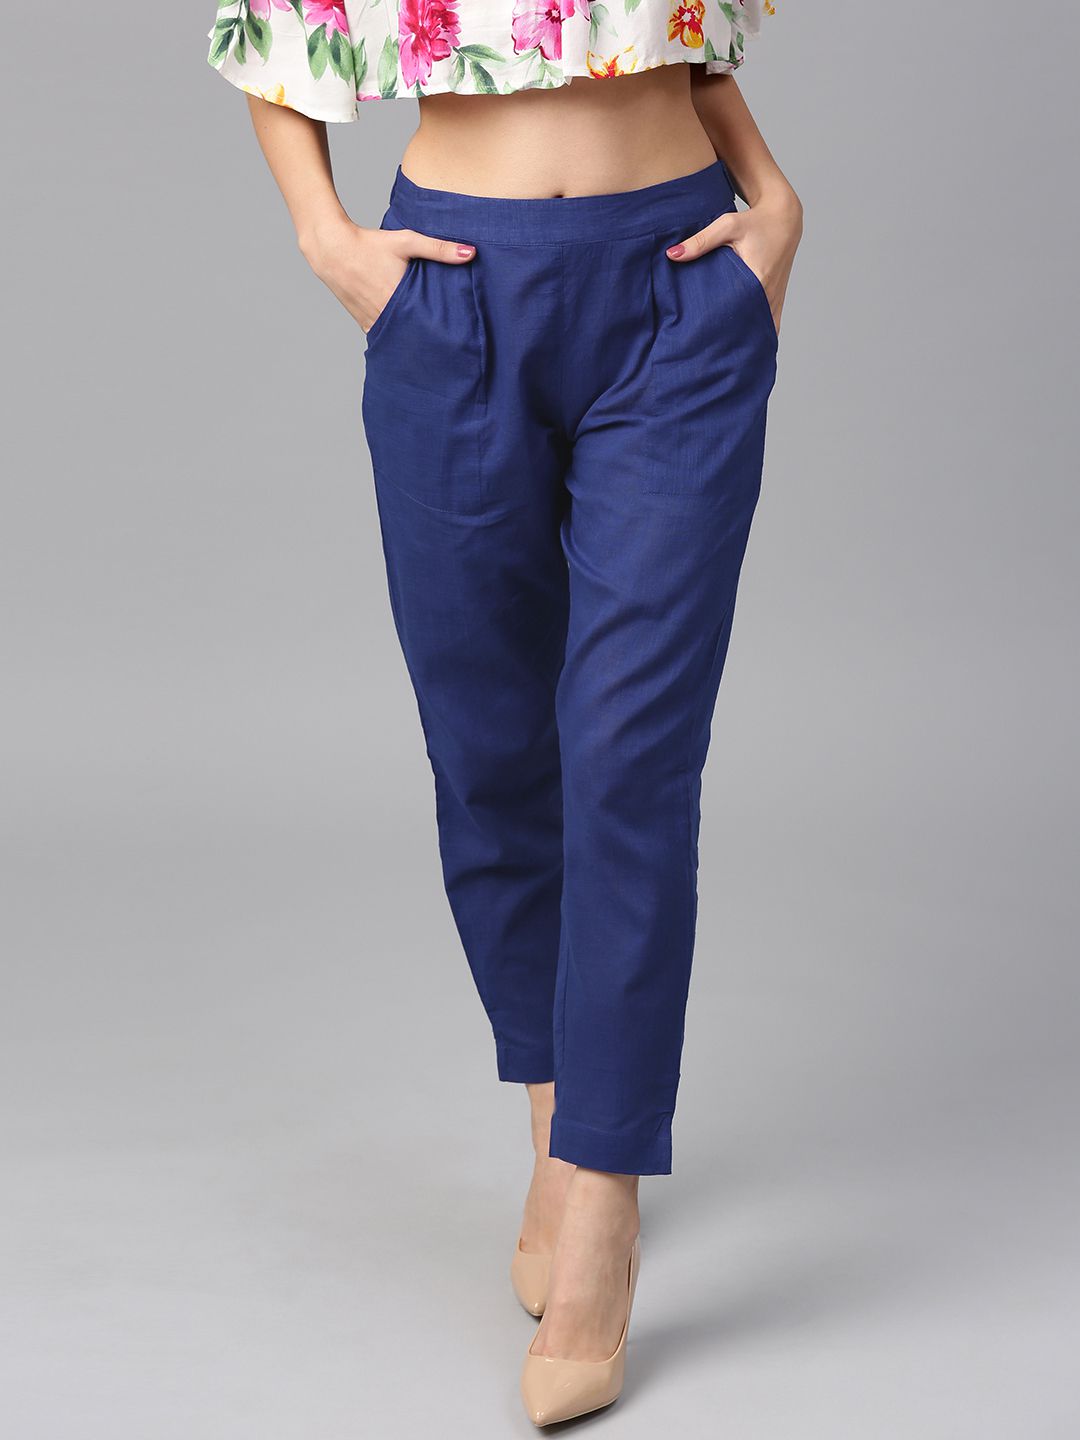 Shop Blue Color Slub Cotton Solid Pants